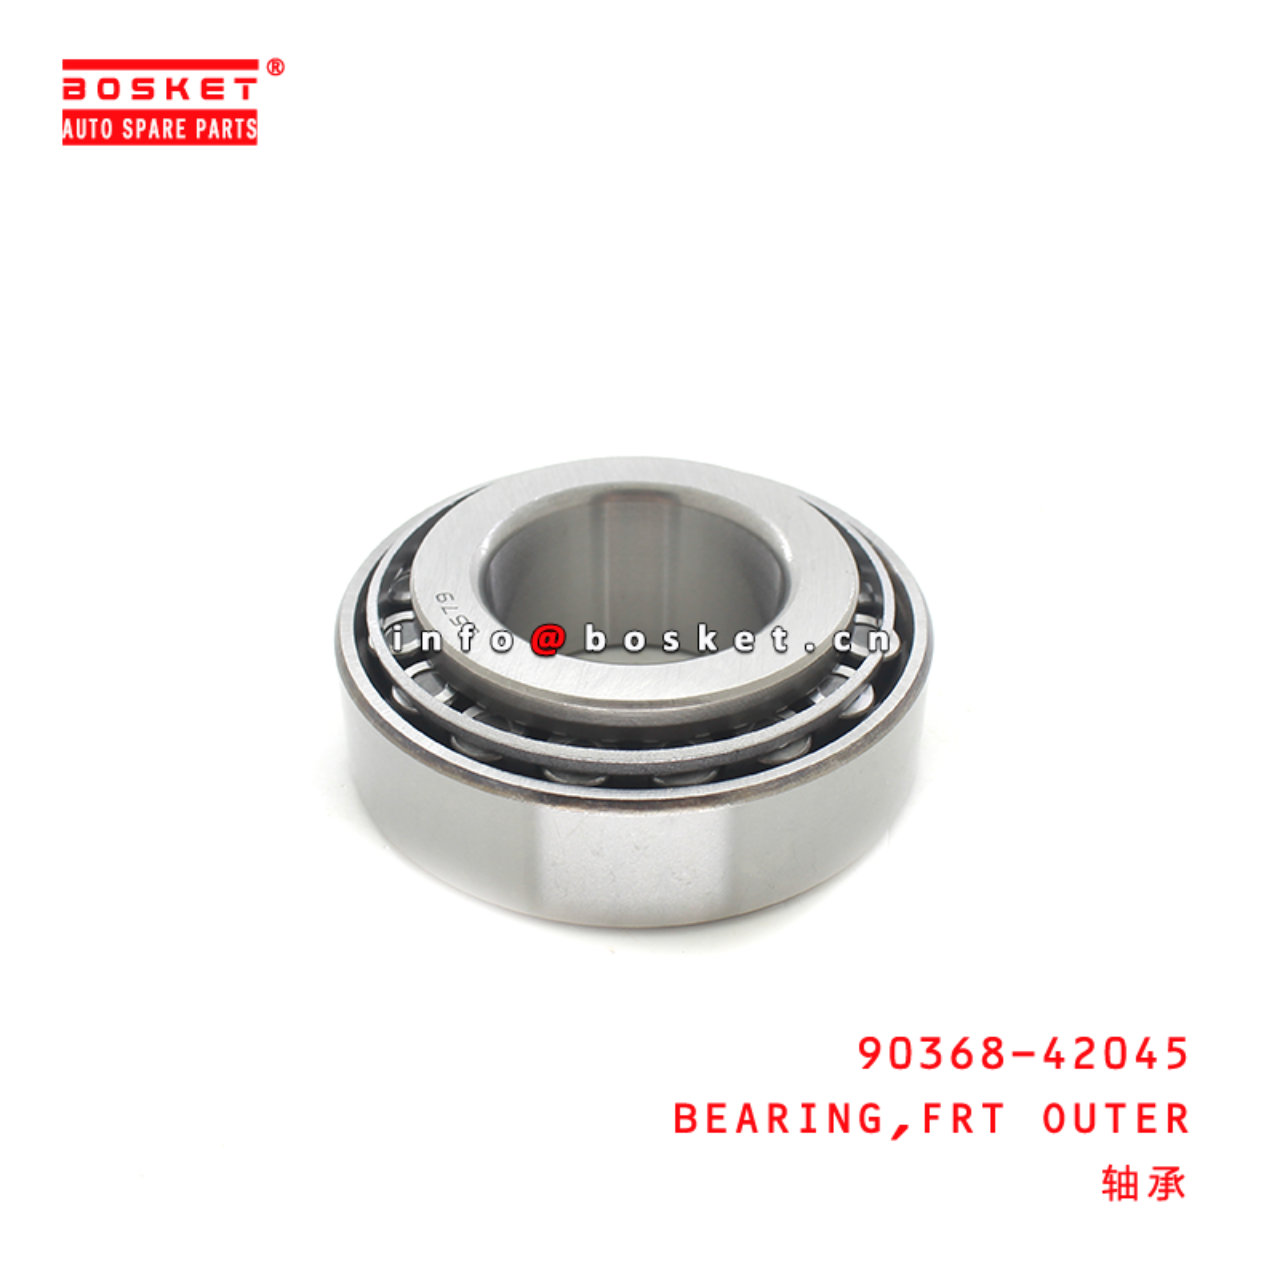 90368-42045 Tapered Bearing Suitable for ISUZU HINO700